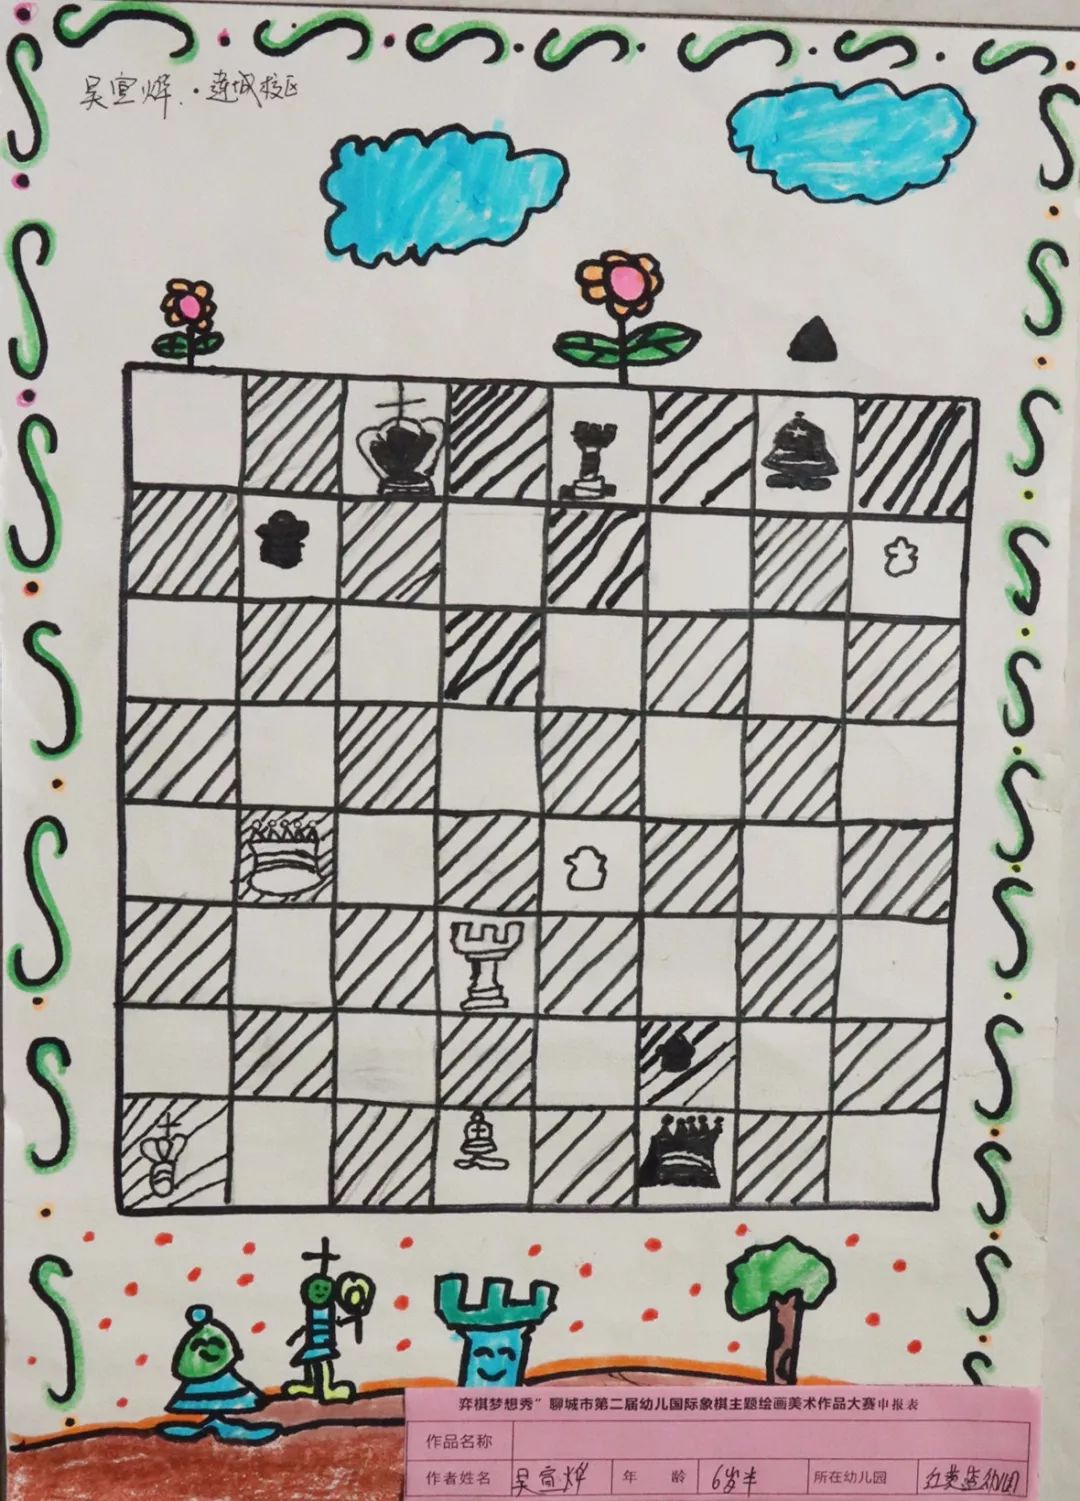 国际象棋绘画比赛作品图片